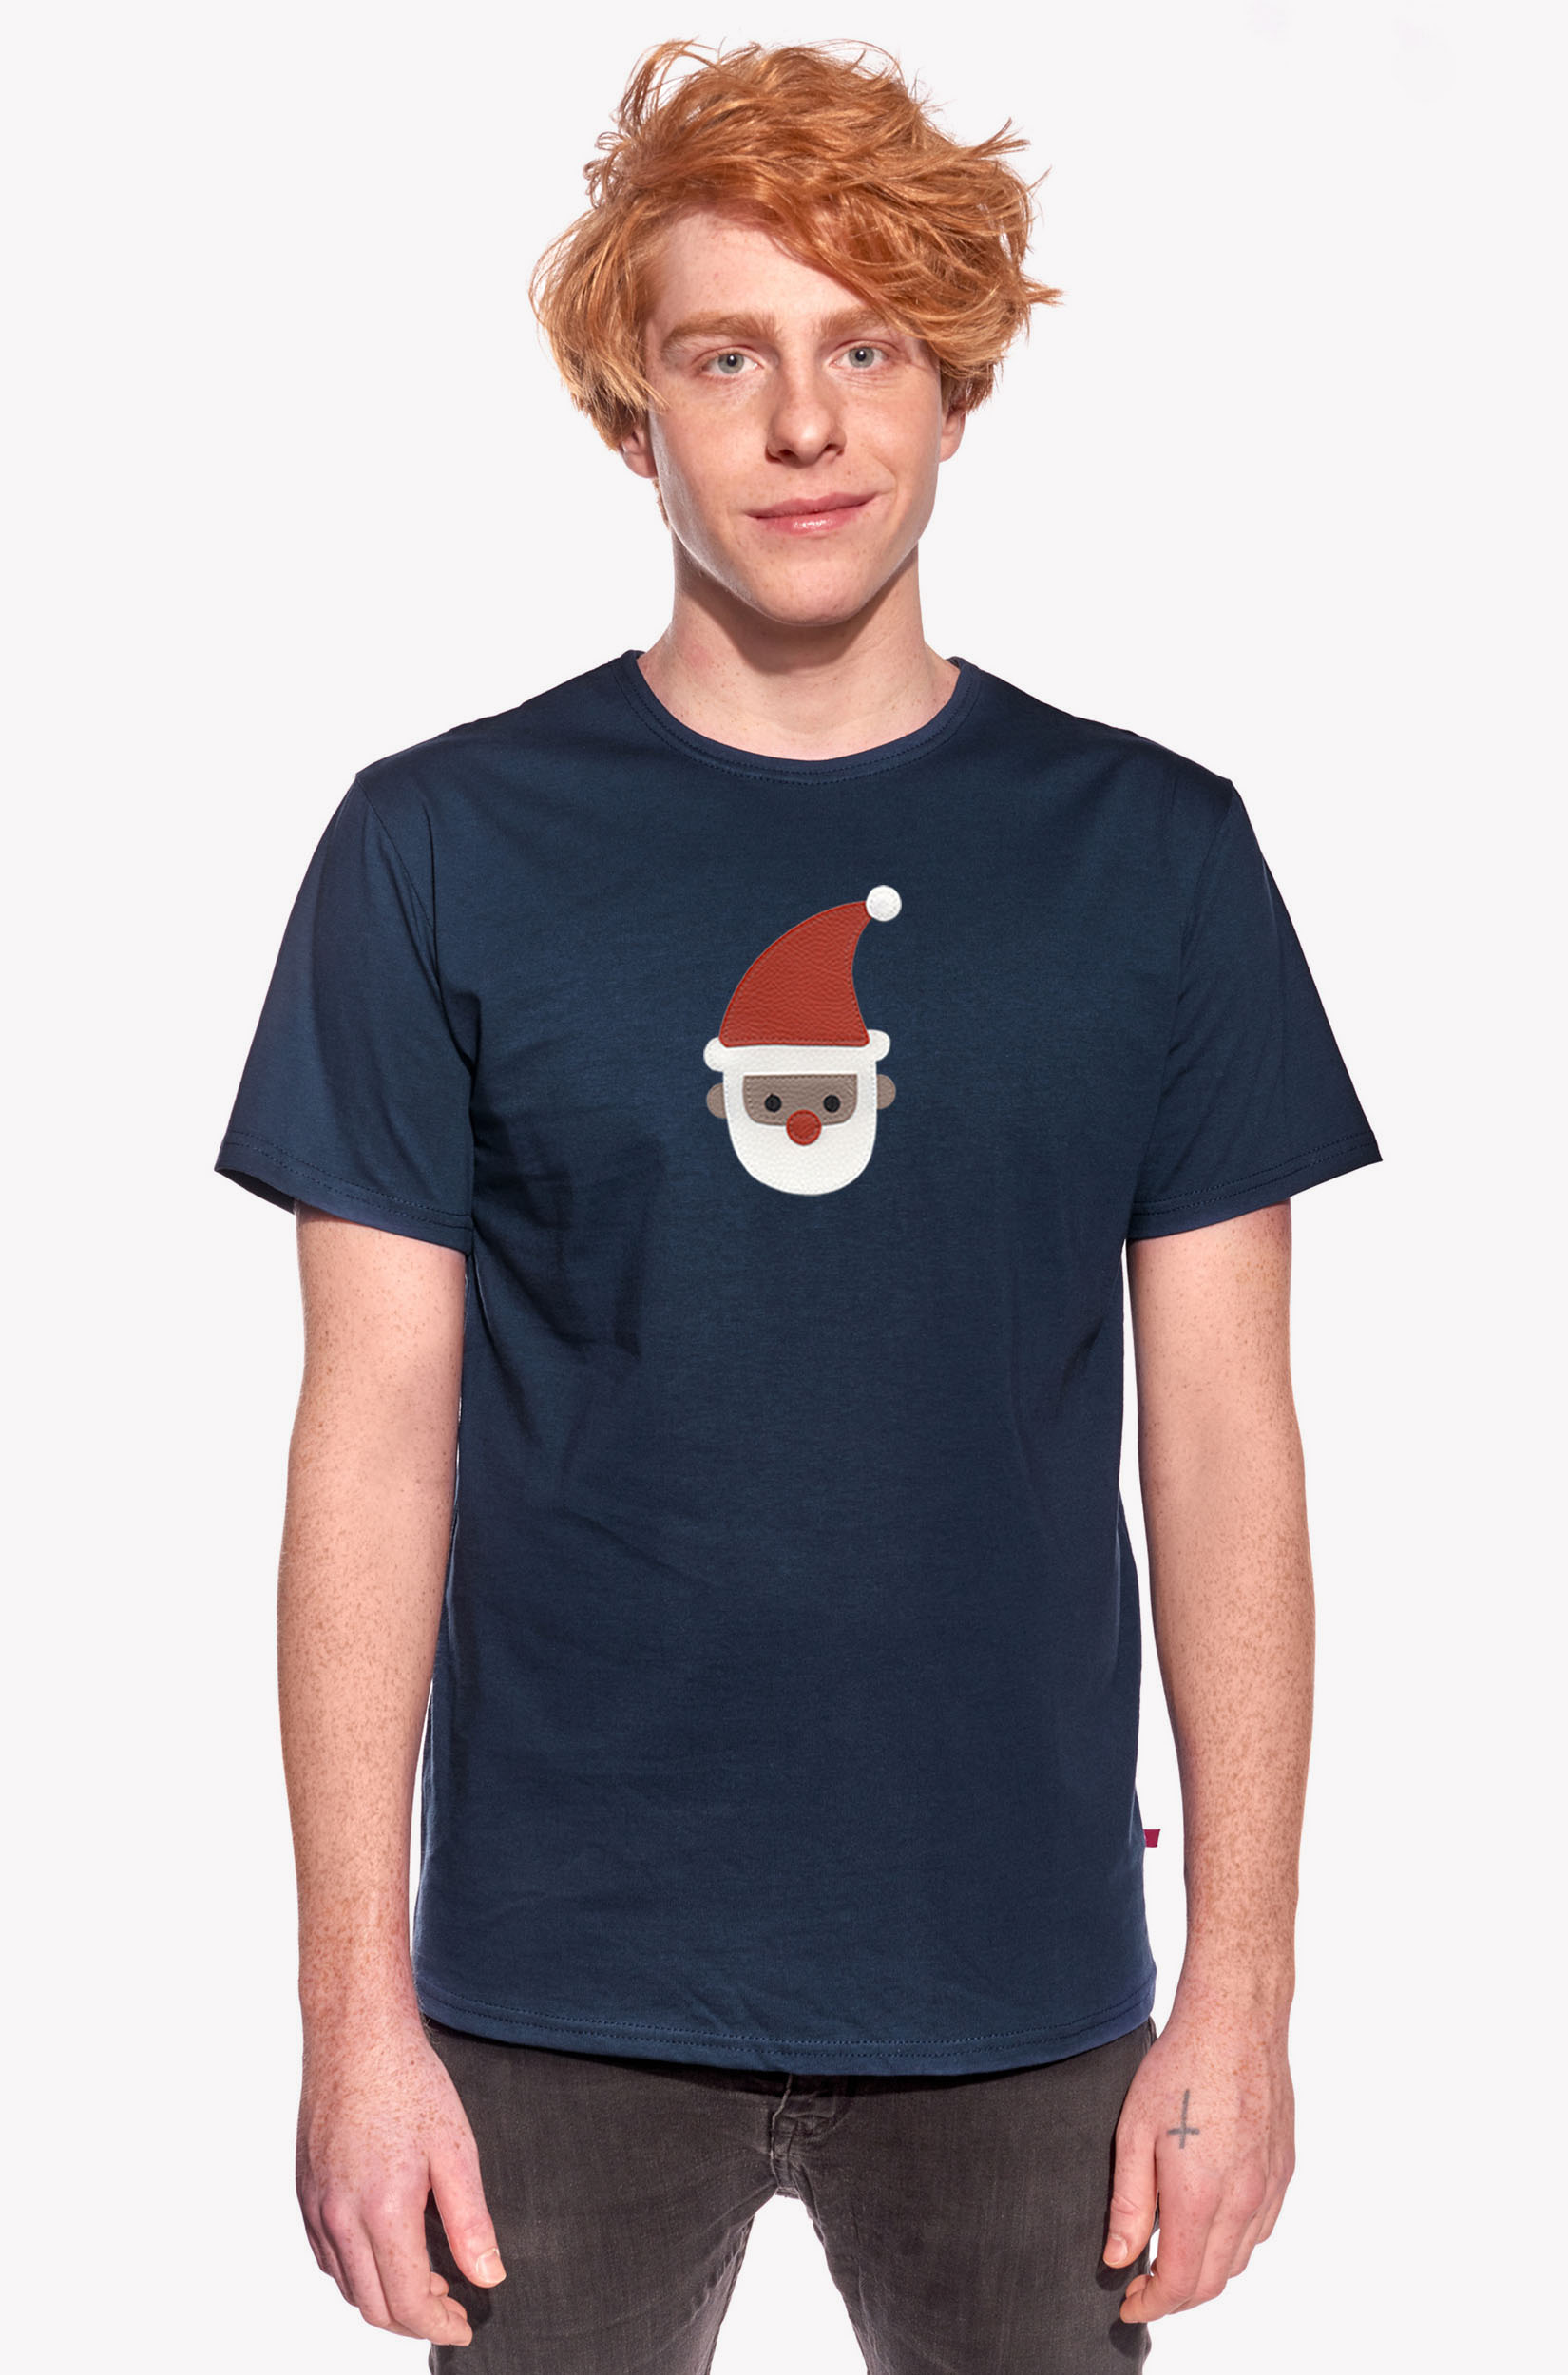 Shirt with Santa